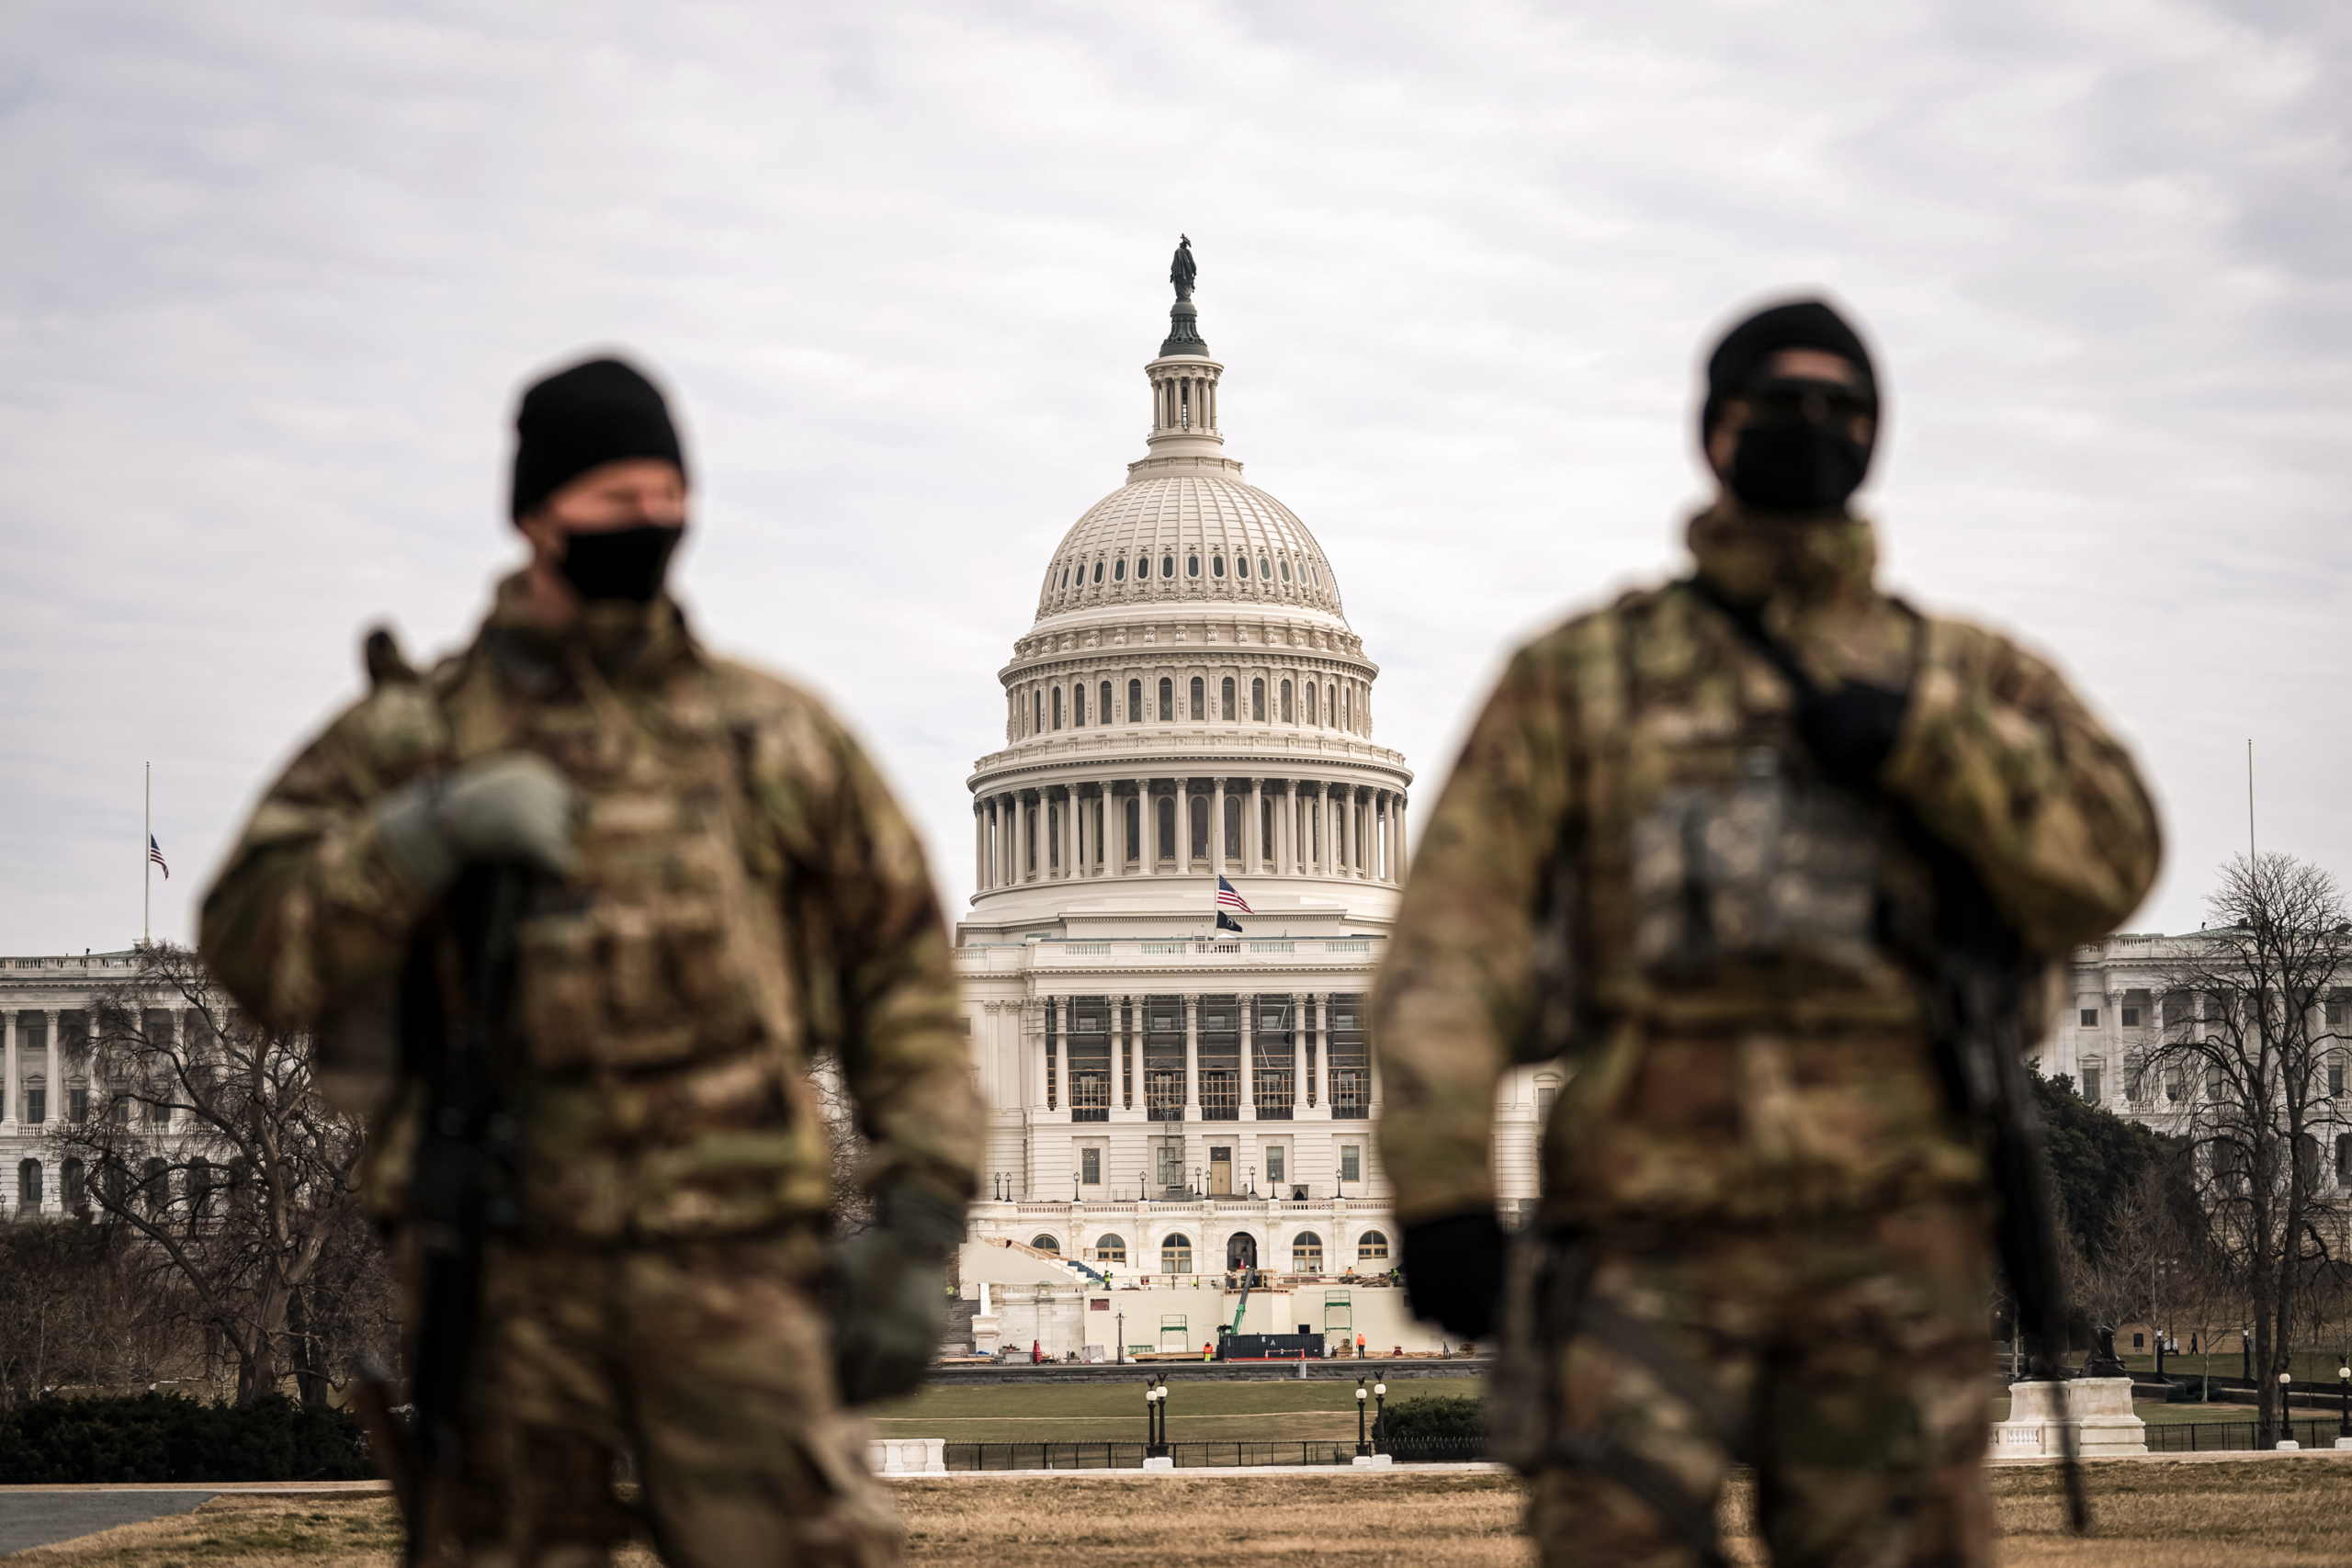 Các thành viên của Lực lượng Vệ binh Quốc gia tuần tra khu vực bên ngoài Tòa nhà Capitol Hoa Kỳ trong phiên tòa đàn hặc cựu Tổng thống Donald Trump tại Tòa nhà Capitol ở Hoa Thịnh Đốn vào ngày 10/02/2021. (Ảnh: Jose Luis Magana/AP Photo)